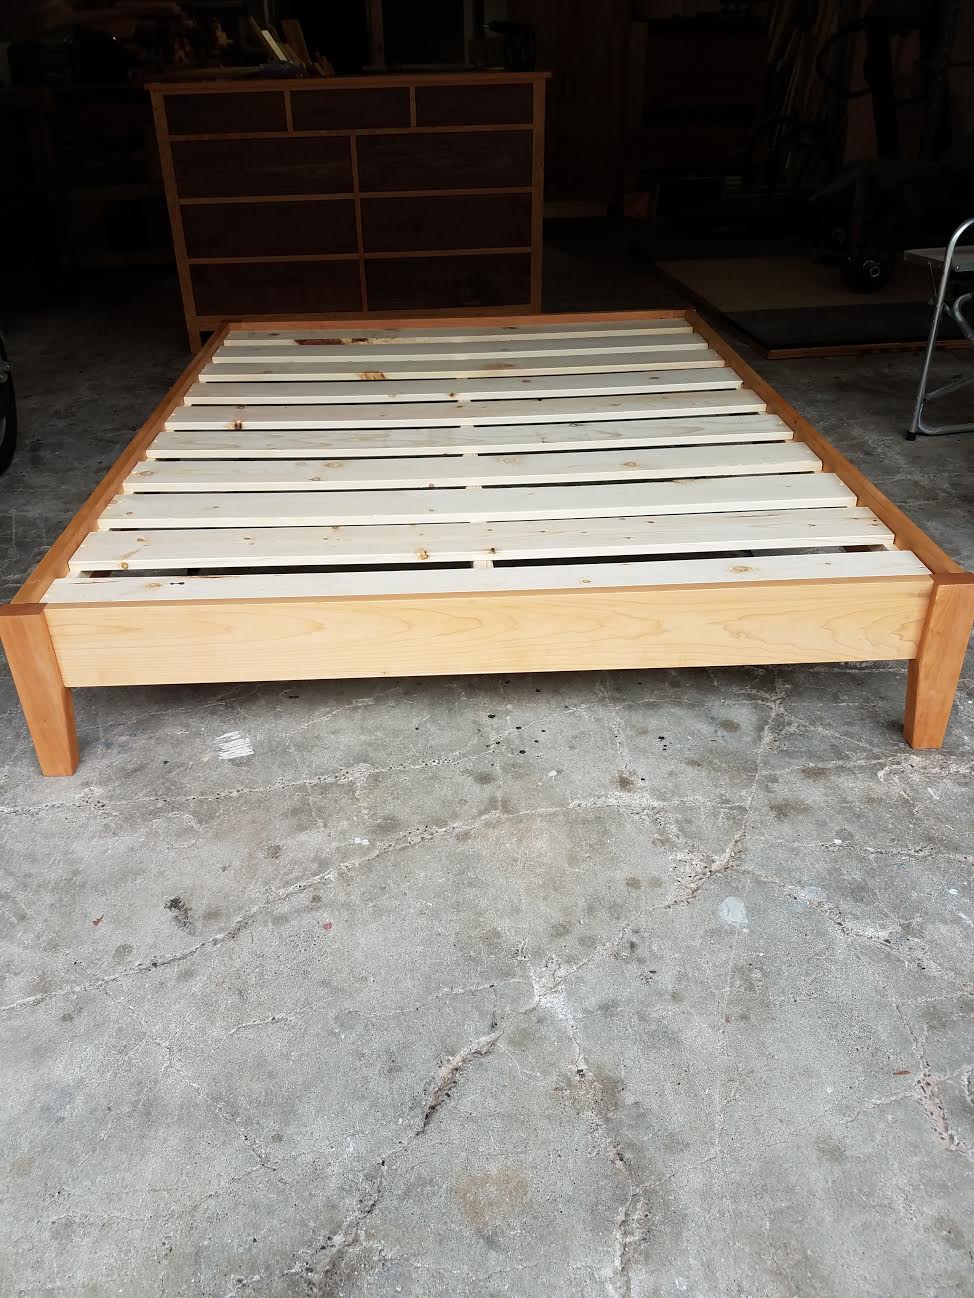 Basic Platform Bed